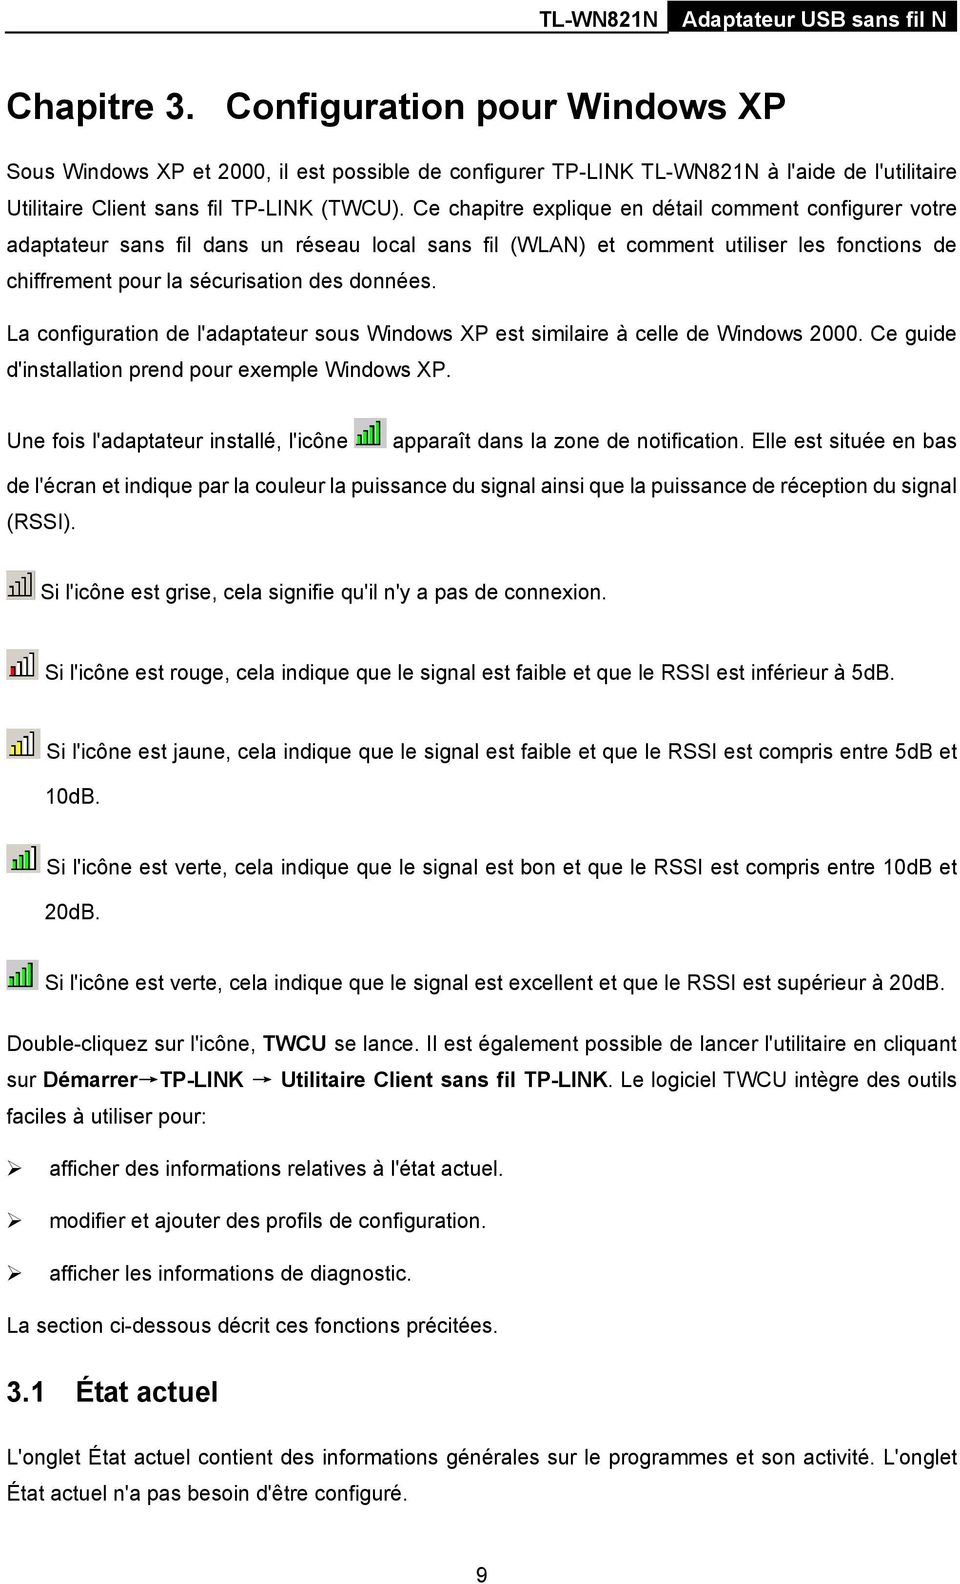 La configuration de l'adaptateur sous Windows XP est similaire à celle de Windows 2000. Ce guide d'installation prend pour exemple Windows XP.